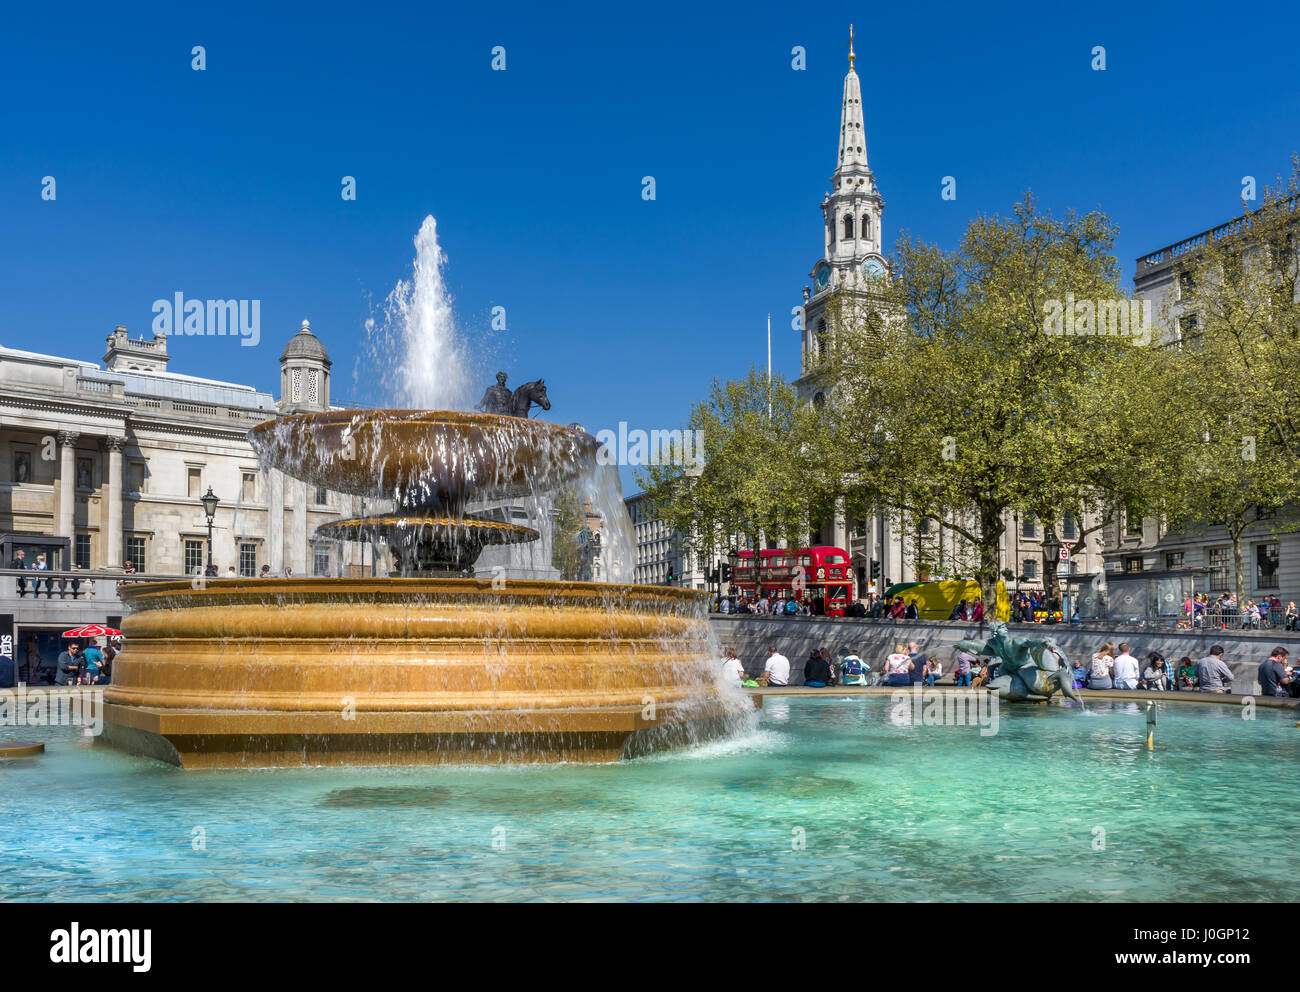 Trafalgar Square es una plaza pública de la ciudad de Westminster, en el centro de Londres. Se conmemora la Batalla de Trafalgar, que tuvo lugar en 1805. Foto de stock